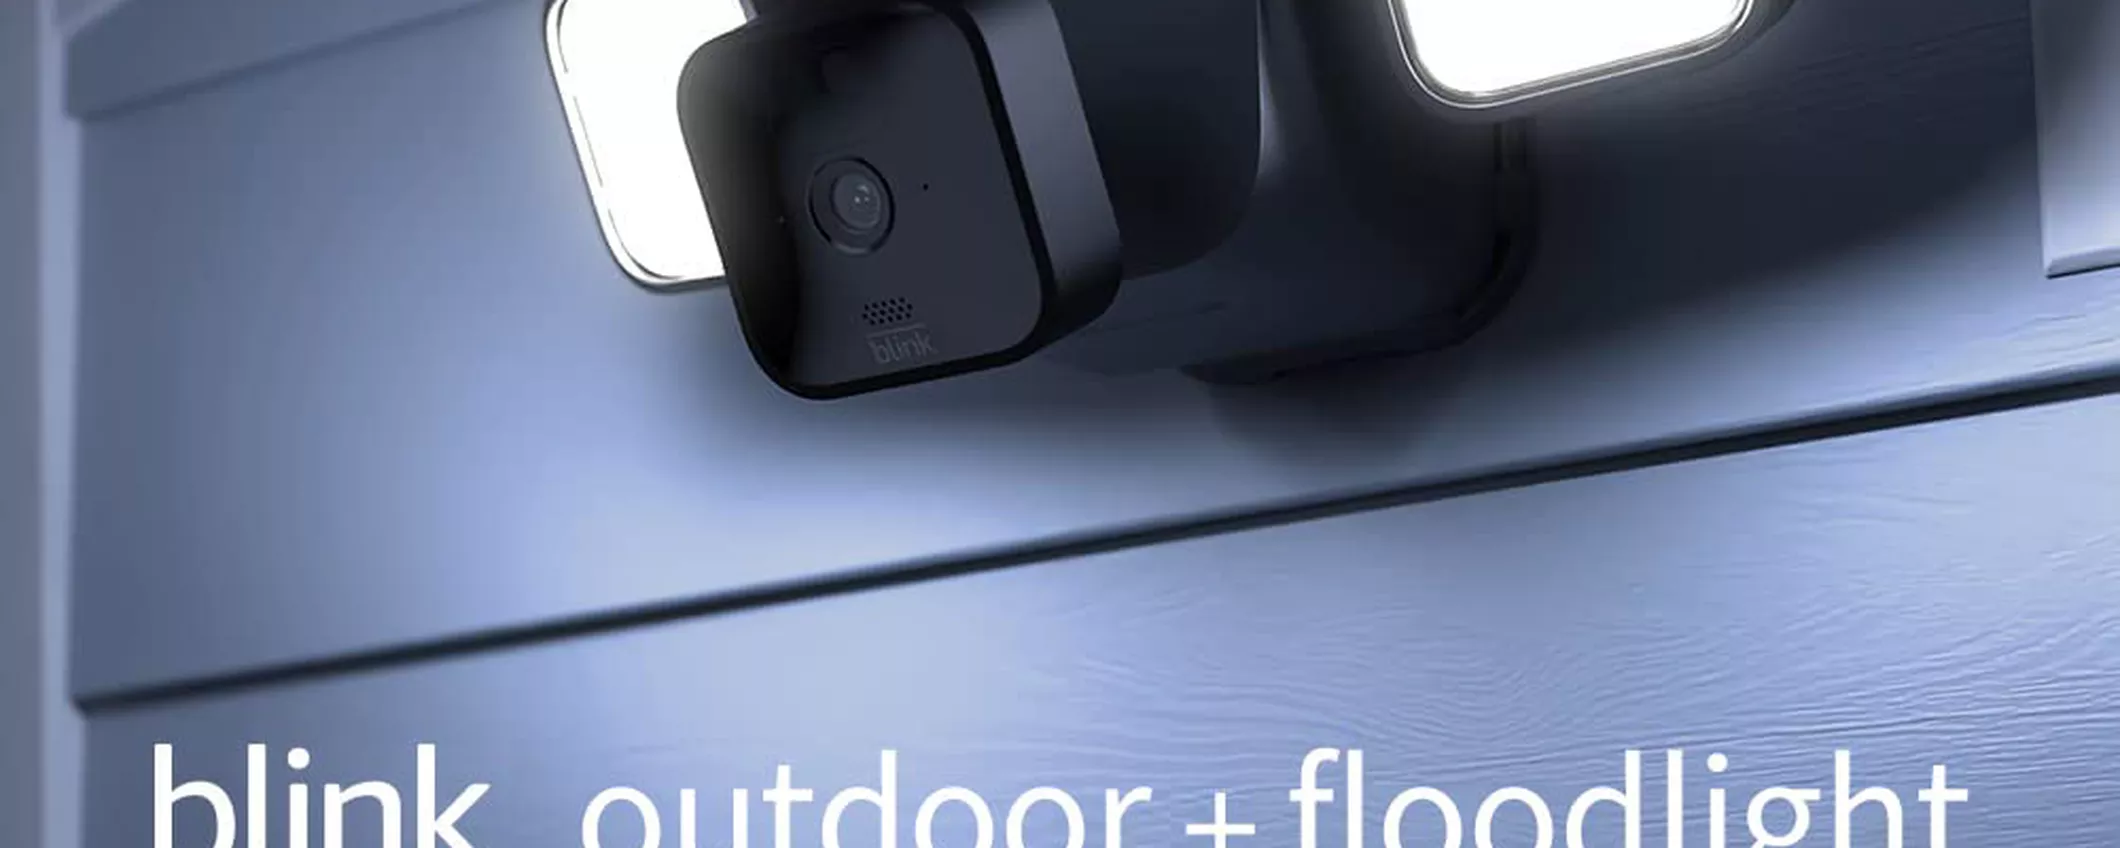 Blink Outdoor+Floodlight, la videocamera intelligente Wireless: illumina e PROTEGGE a 69€ (-50%)